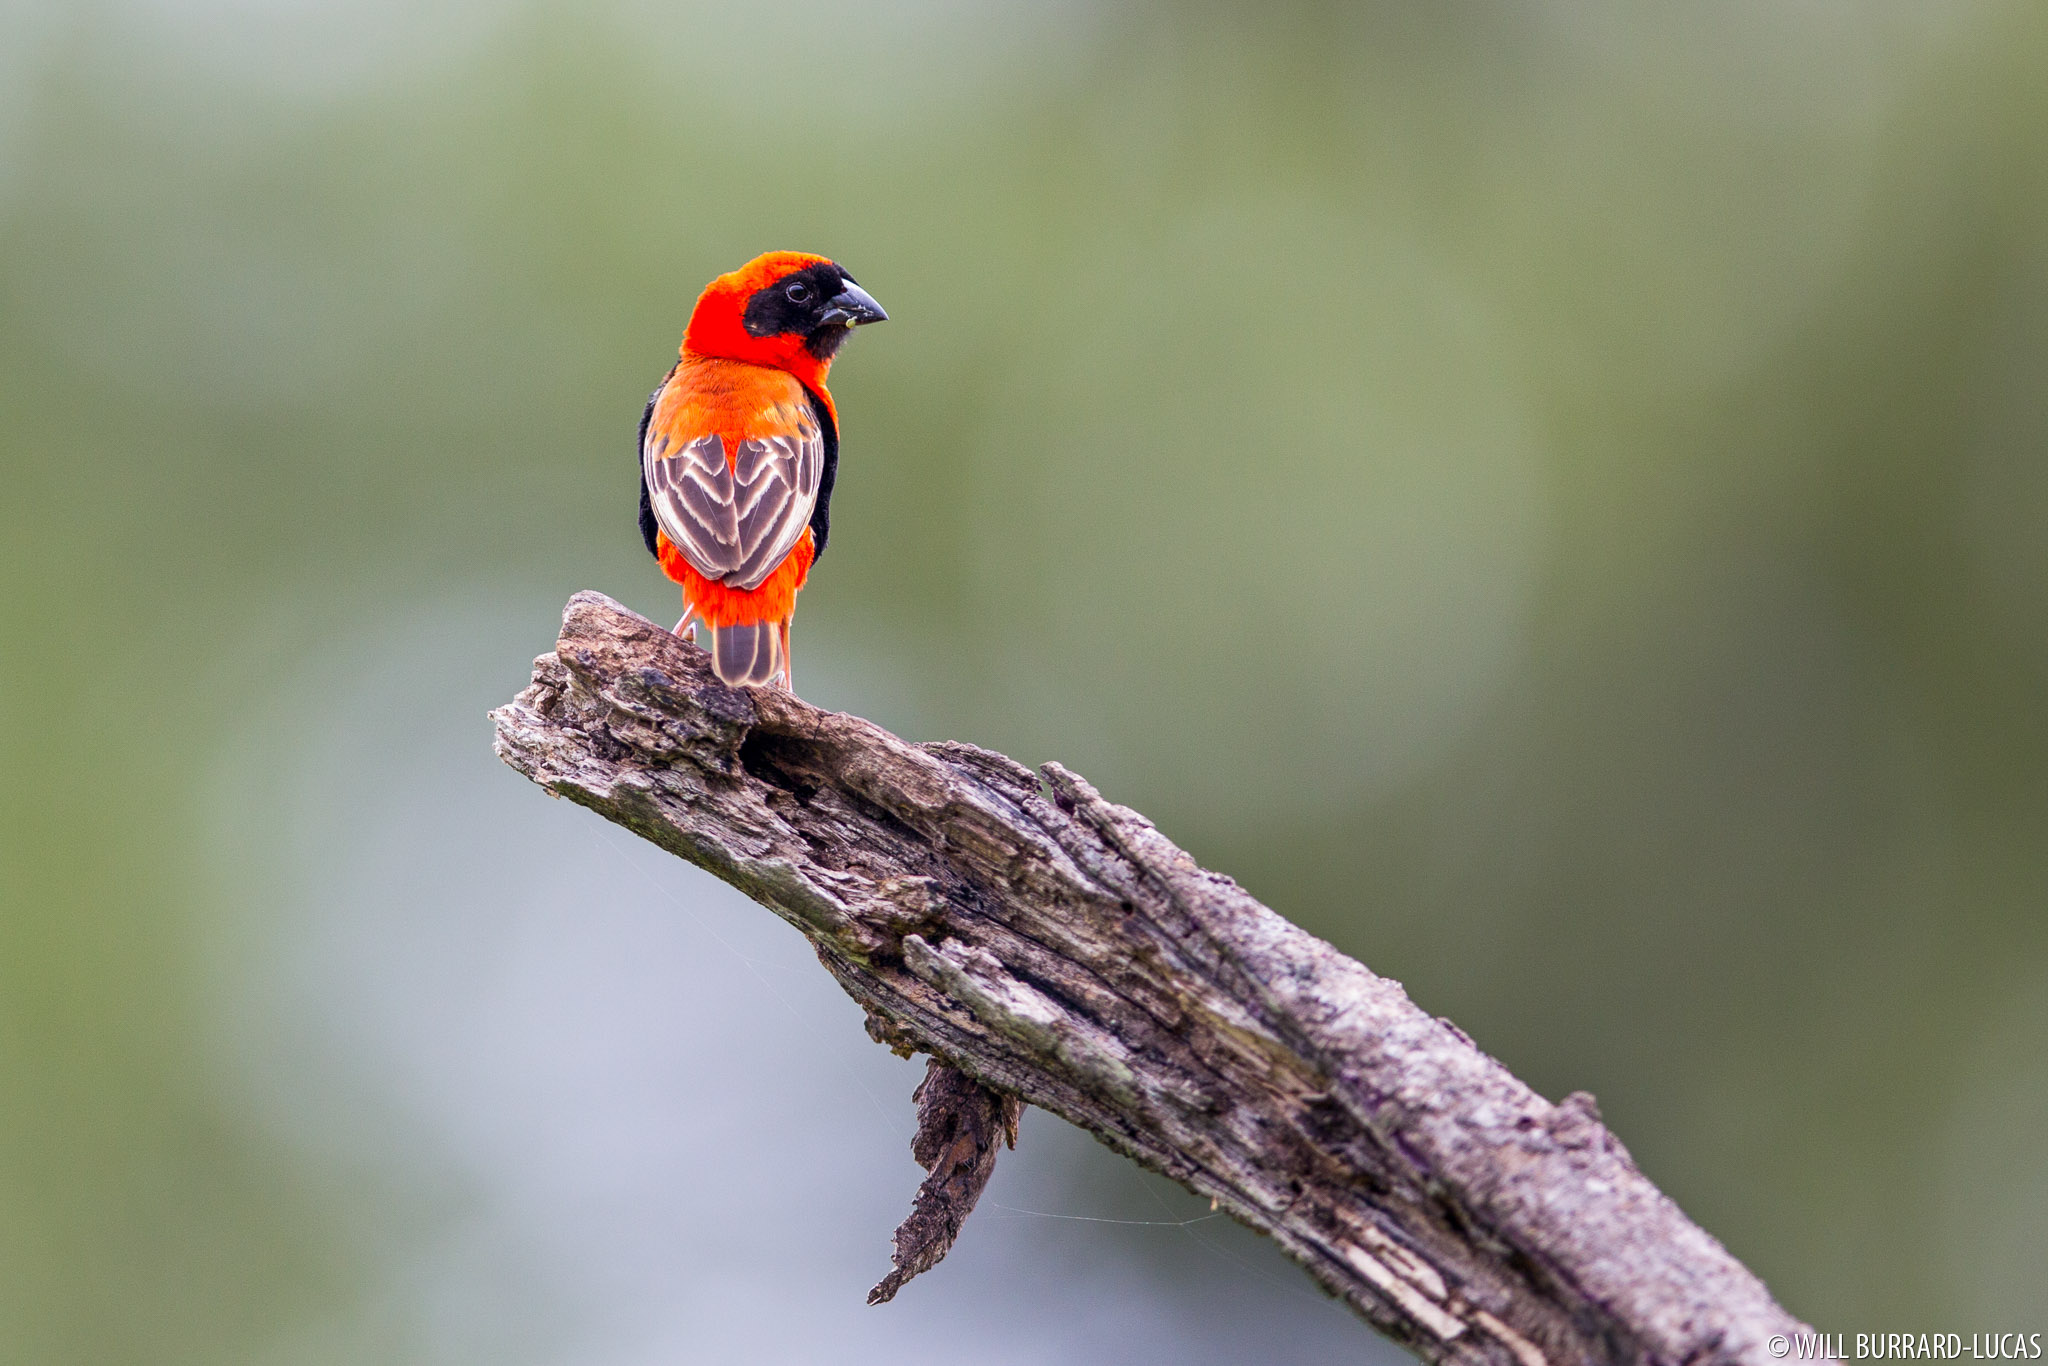 Включи то птица. Оранжевая птица. Птица с красными перьями. Птицы Макросъемка. Макросъемка природа птицы.